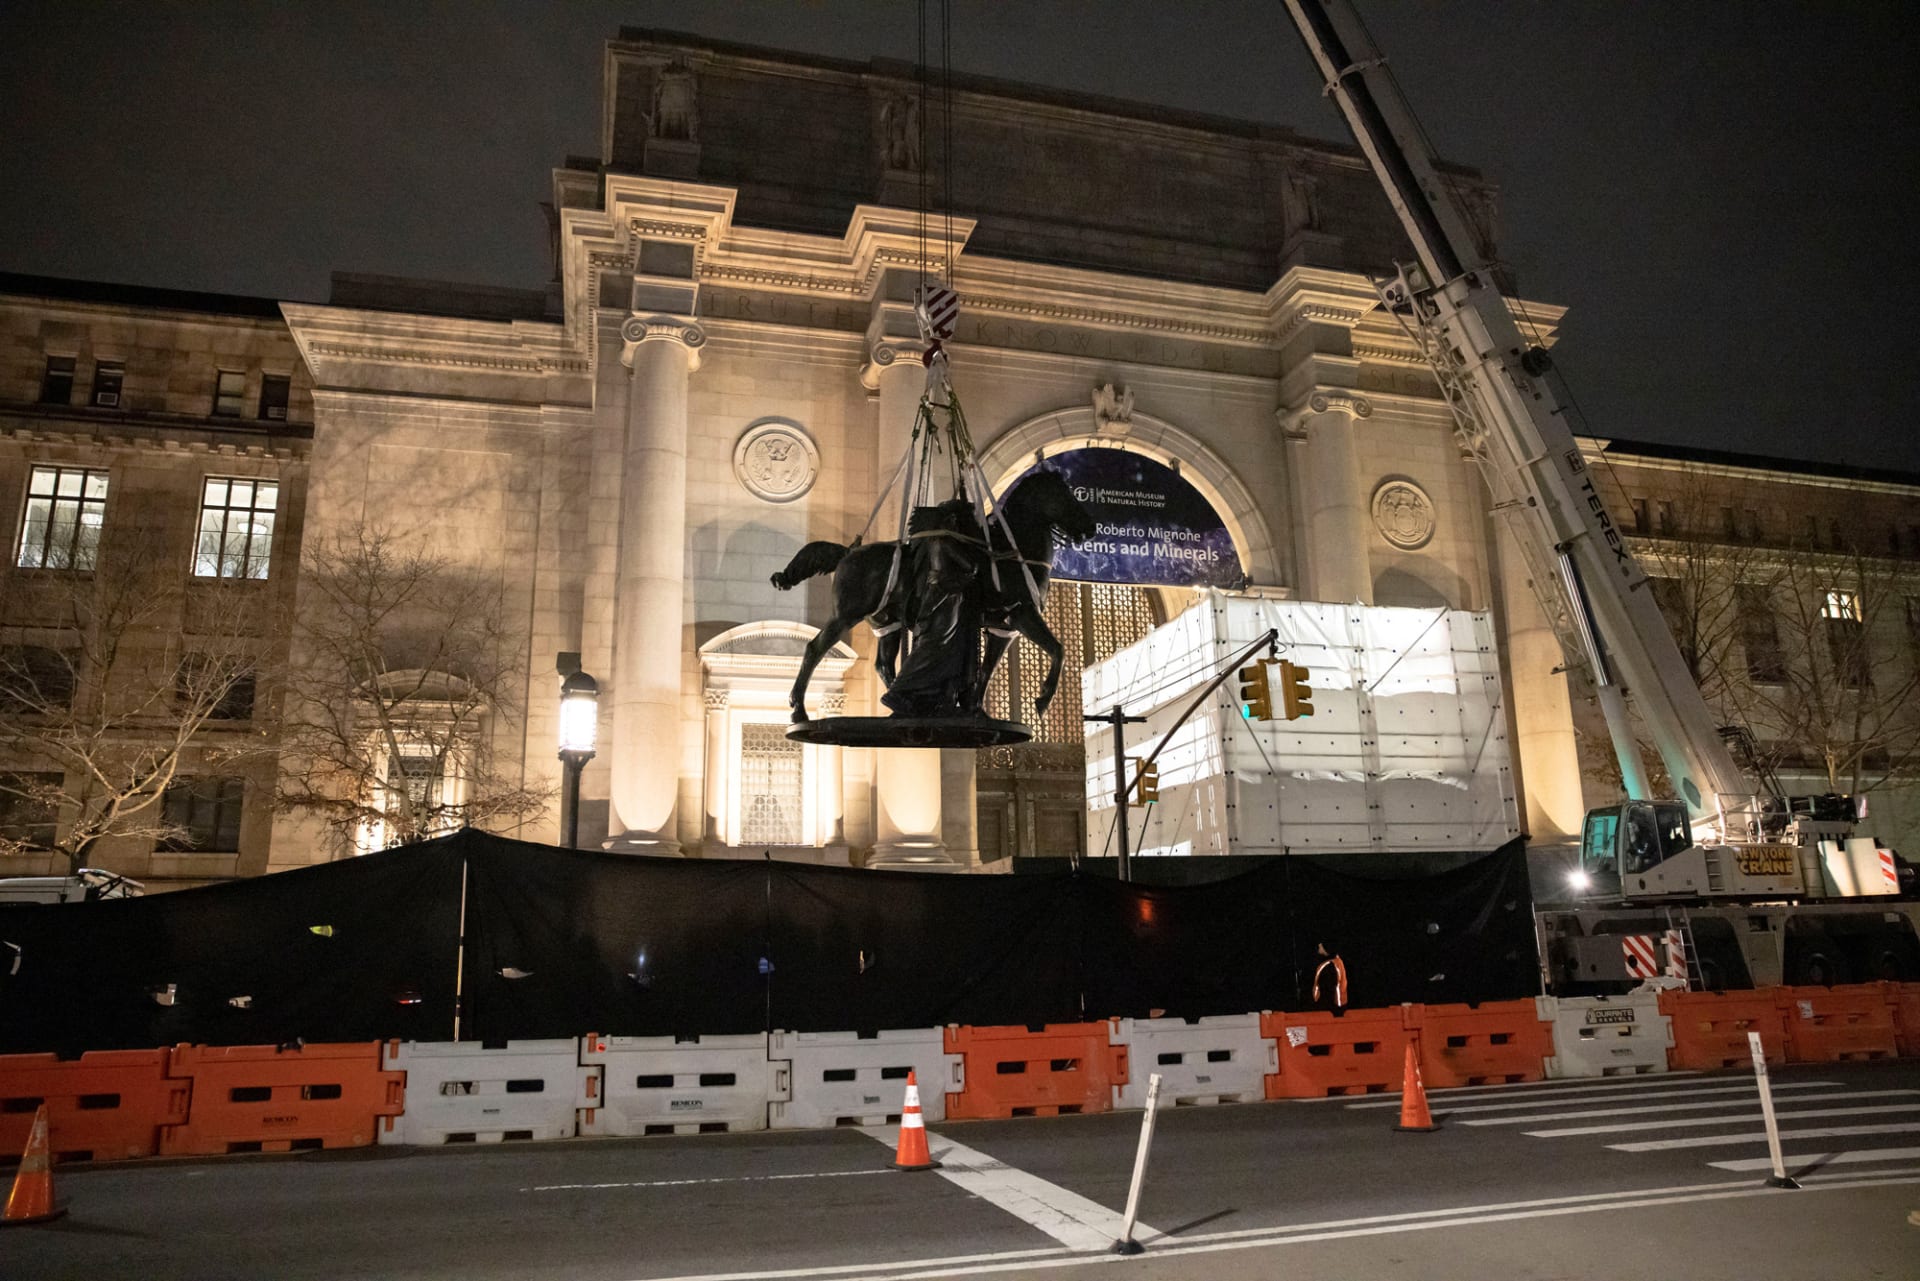 إزالة تمثال للرئيس الأمريكي ثيودور روزفلت من متحف في نيويورك لإثارته الجدل.